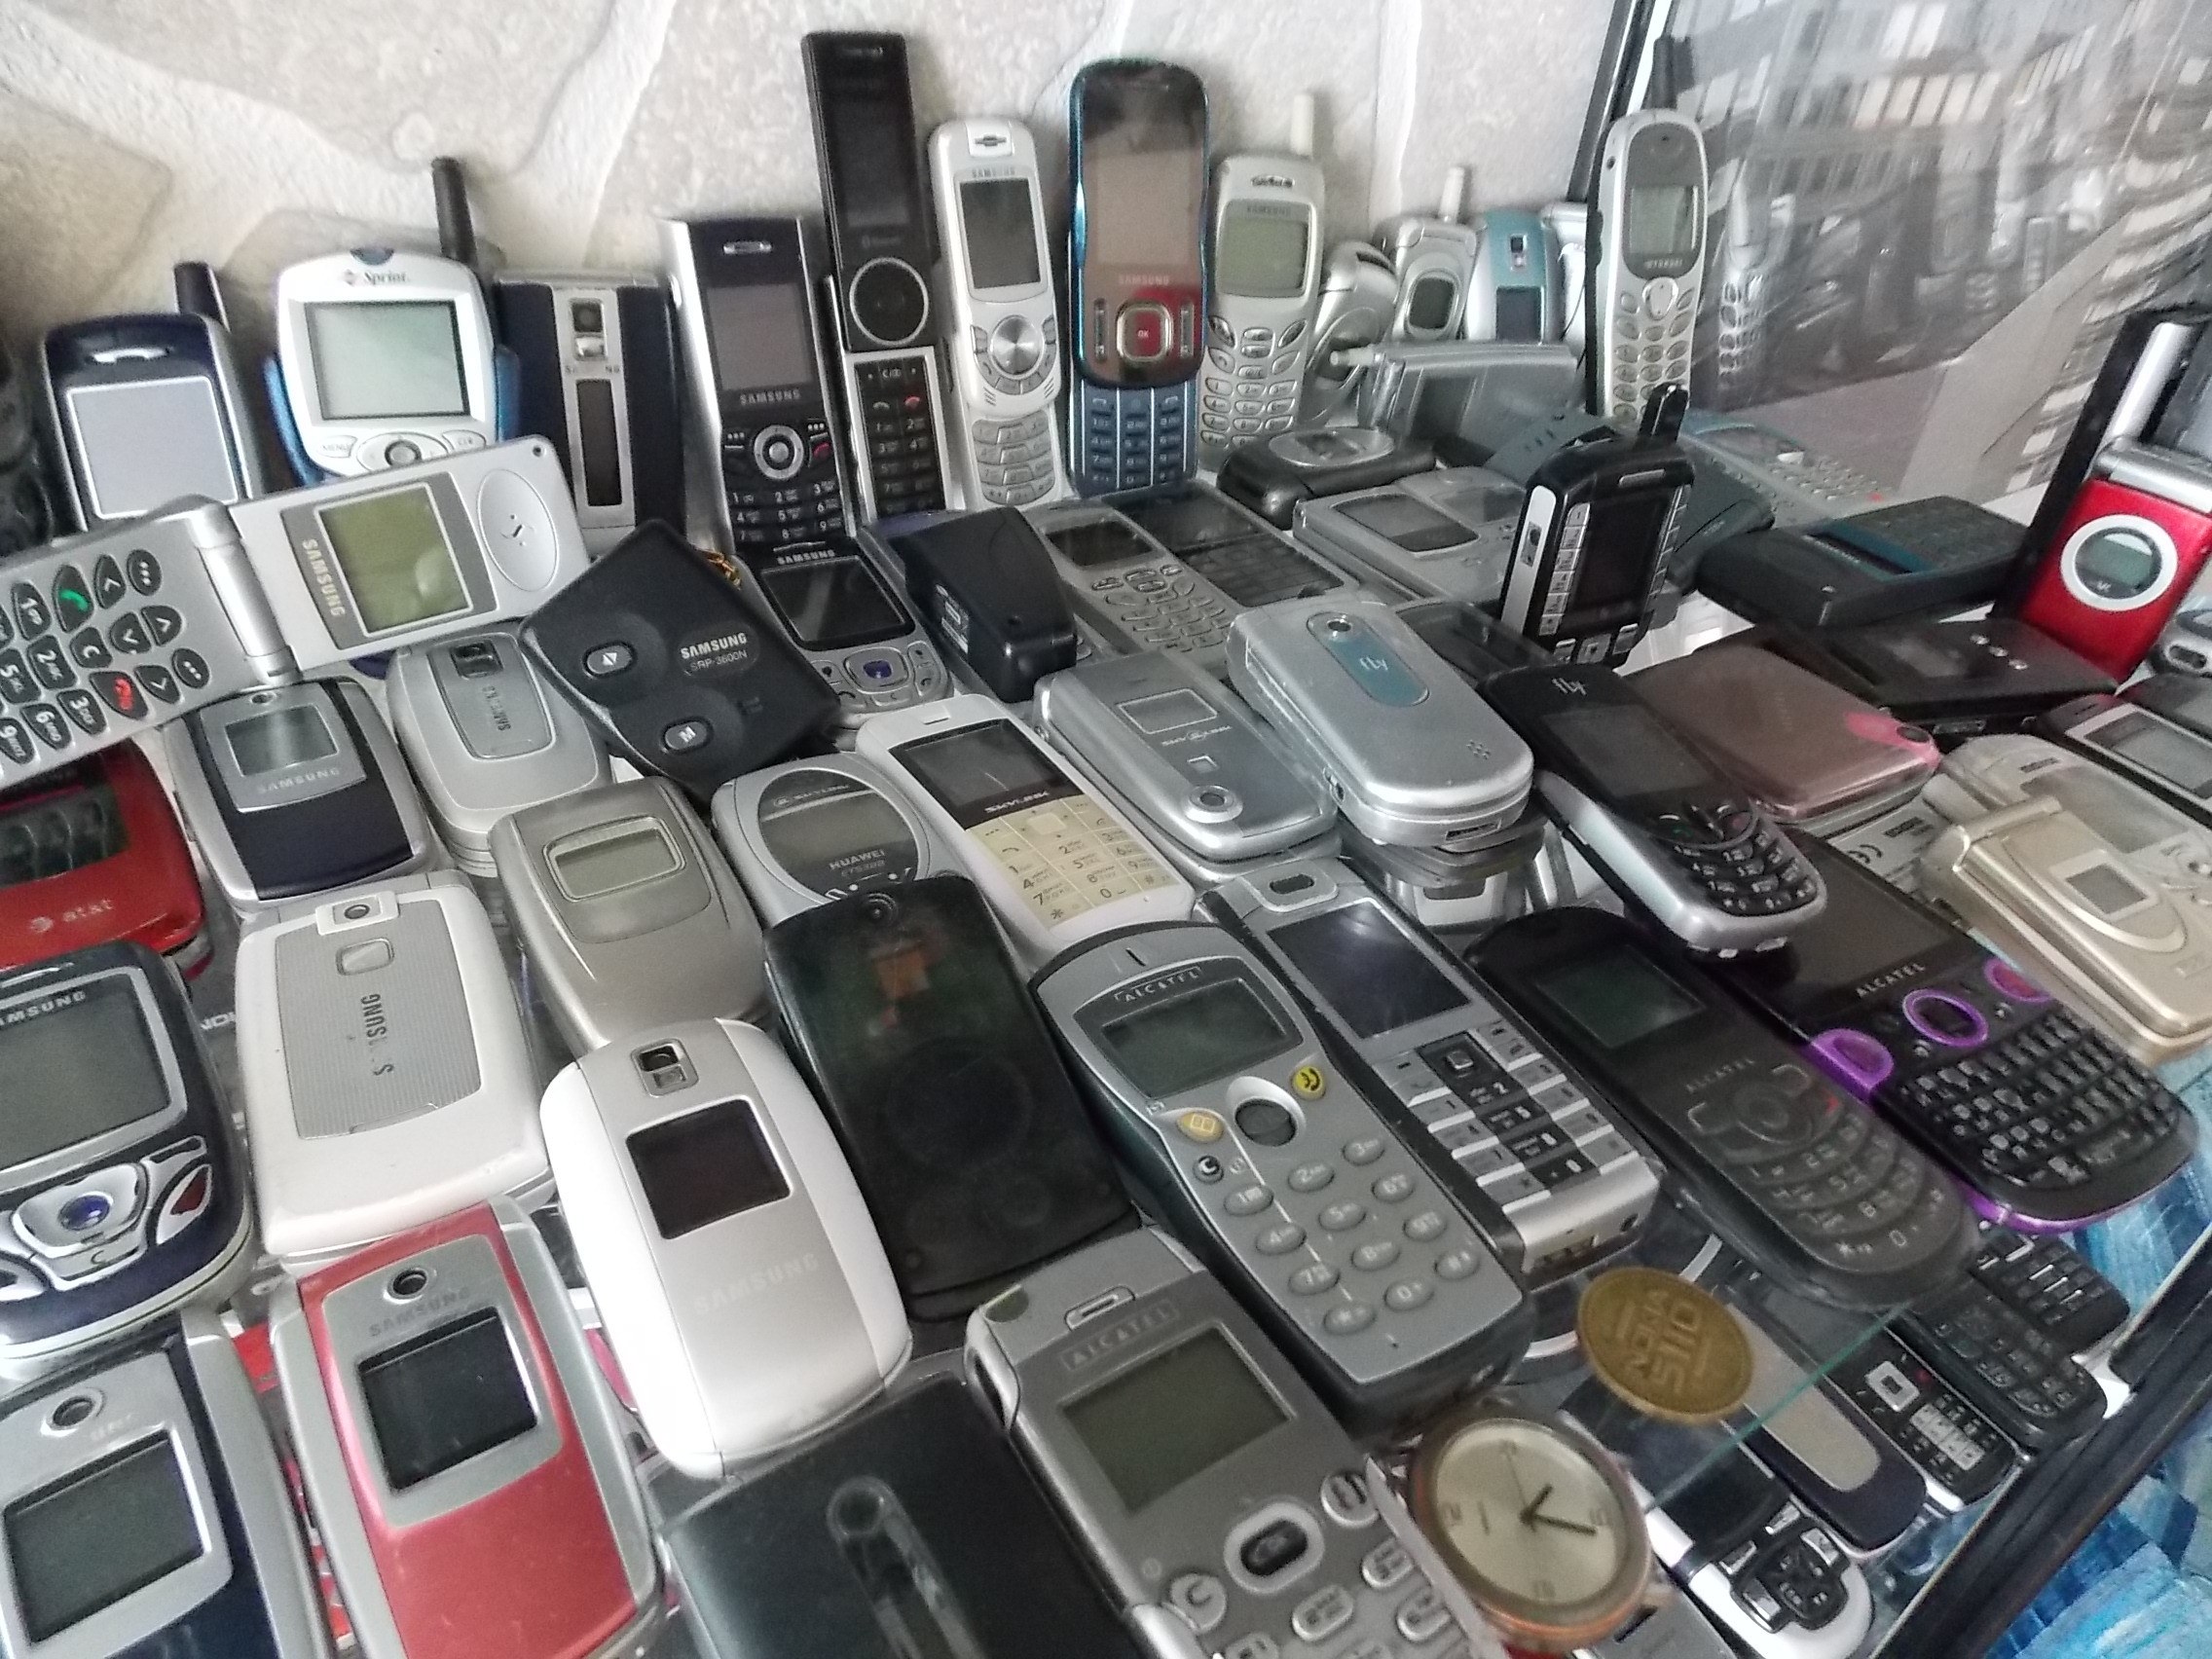 Дешевые бу телефоны. Самсунг 2000х. Сотовый самсунг из 2000. Старые мобильные телефоны. Мобильники 90-х.